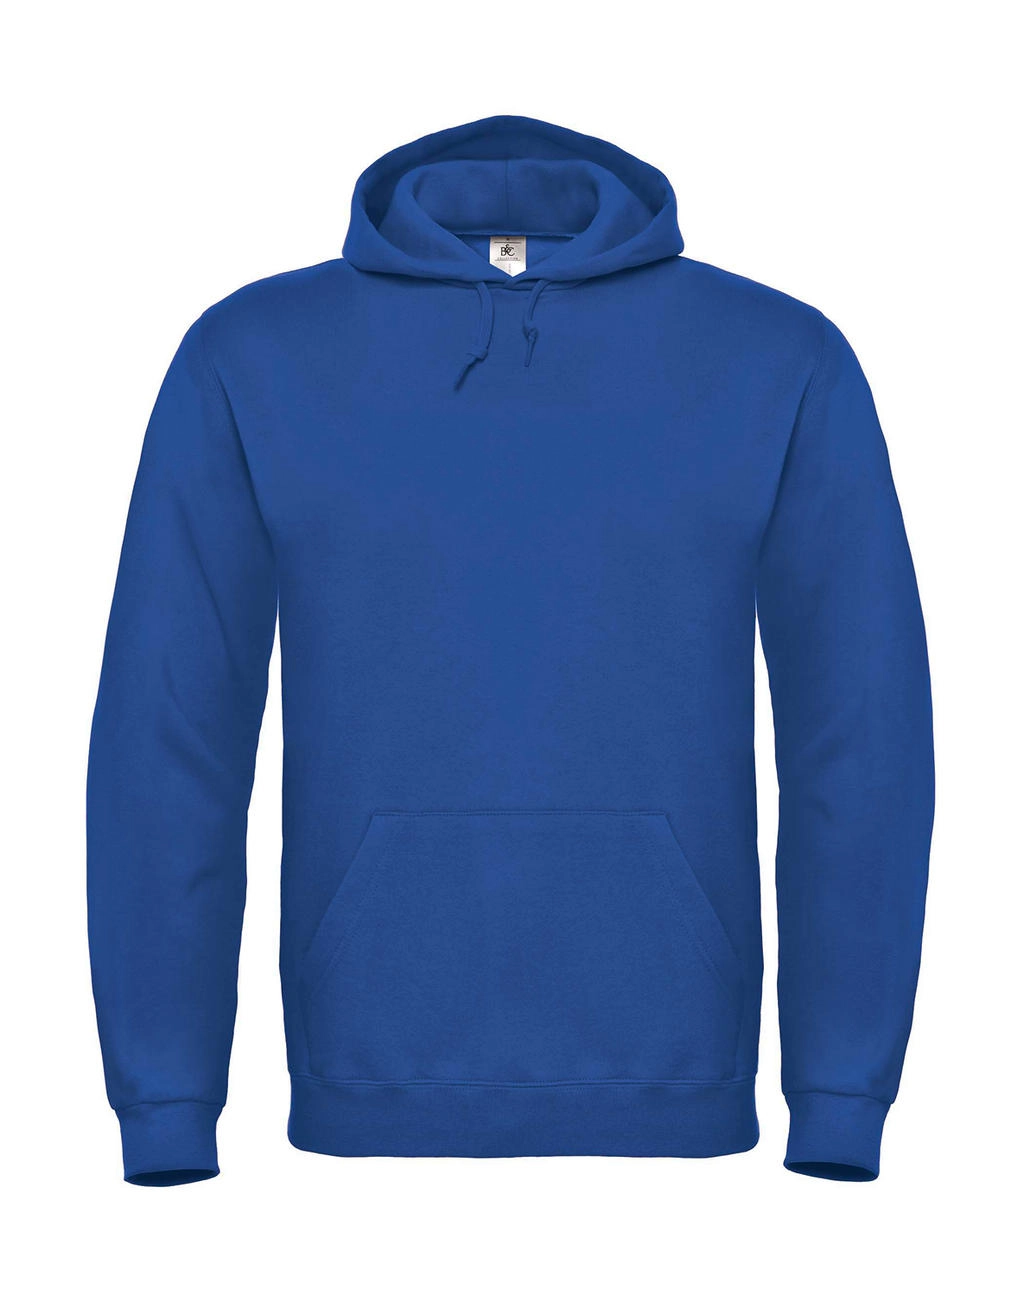 ID.003 Cotton Rich Hooded Sweatshirt zum Besticken und Bedrucken in der Farbe Royal mit Ihren Logo, Schriftzug oder Motiv.